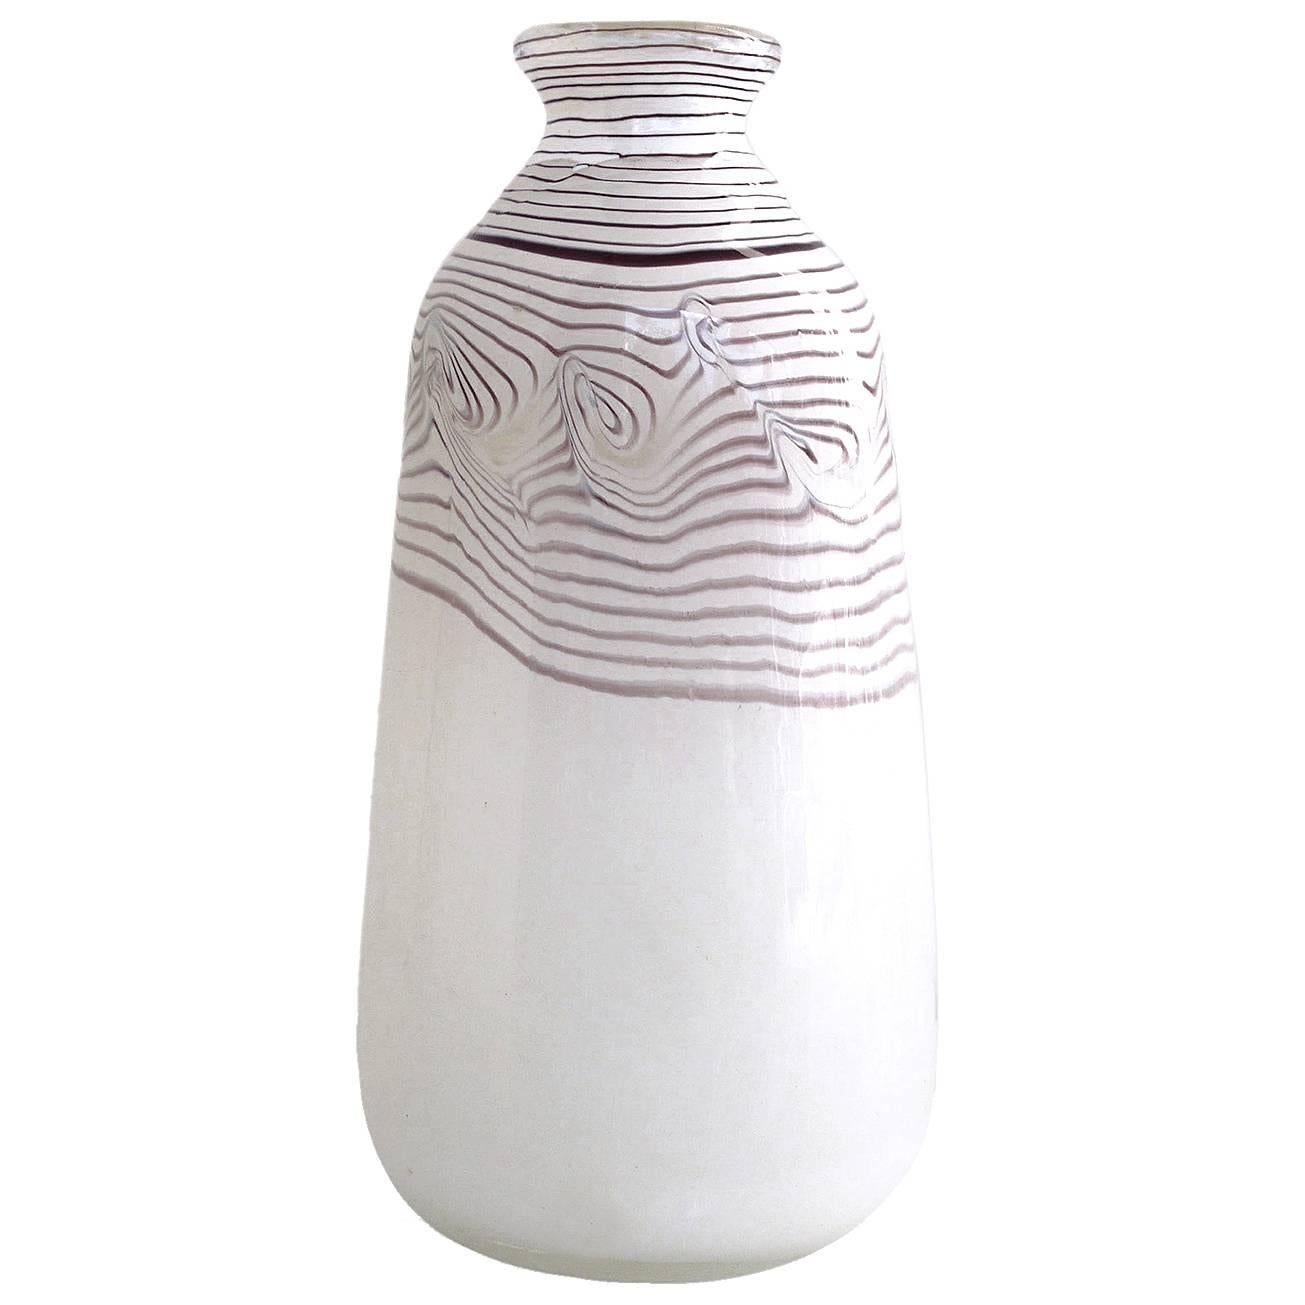  Erwin Eisch Studio Glass Vase